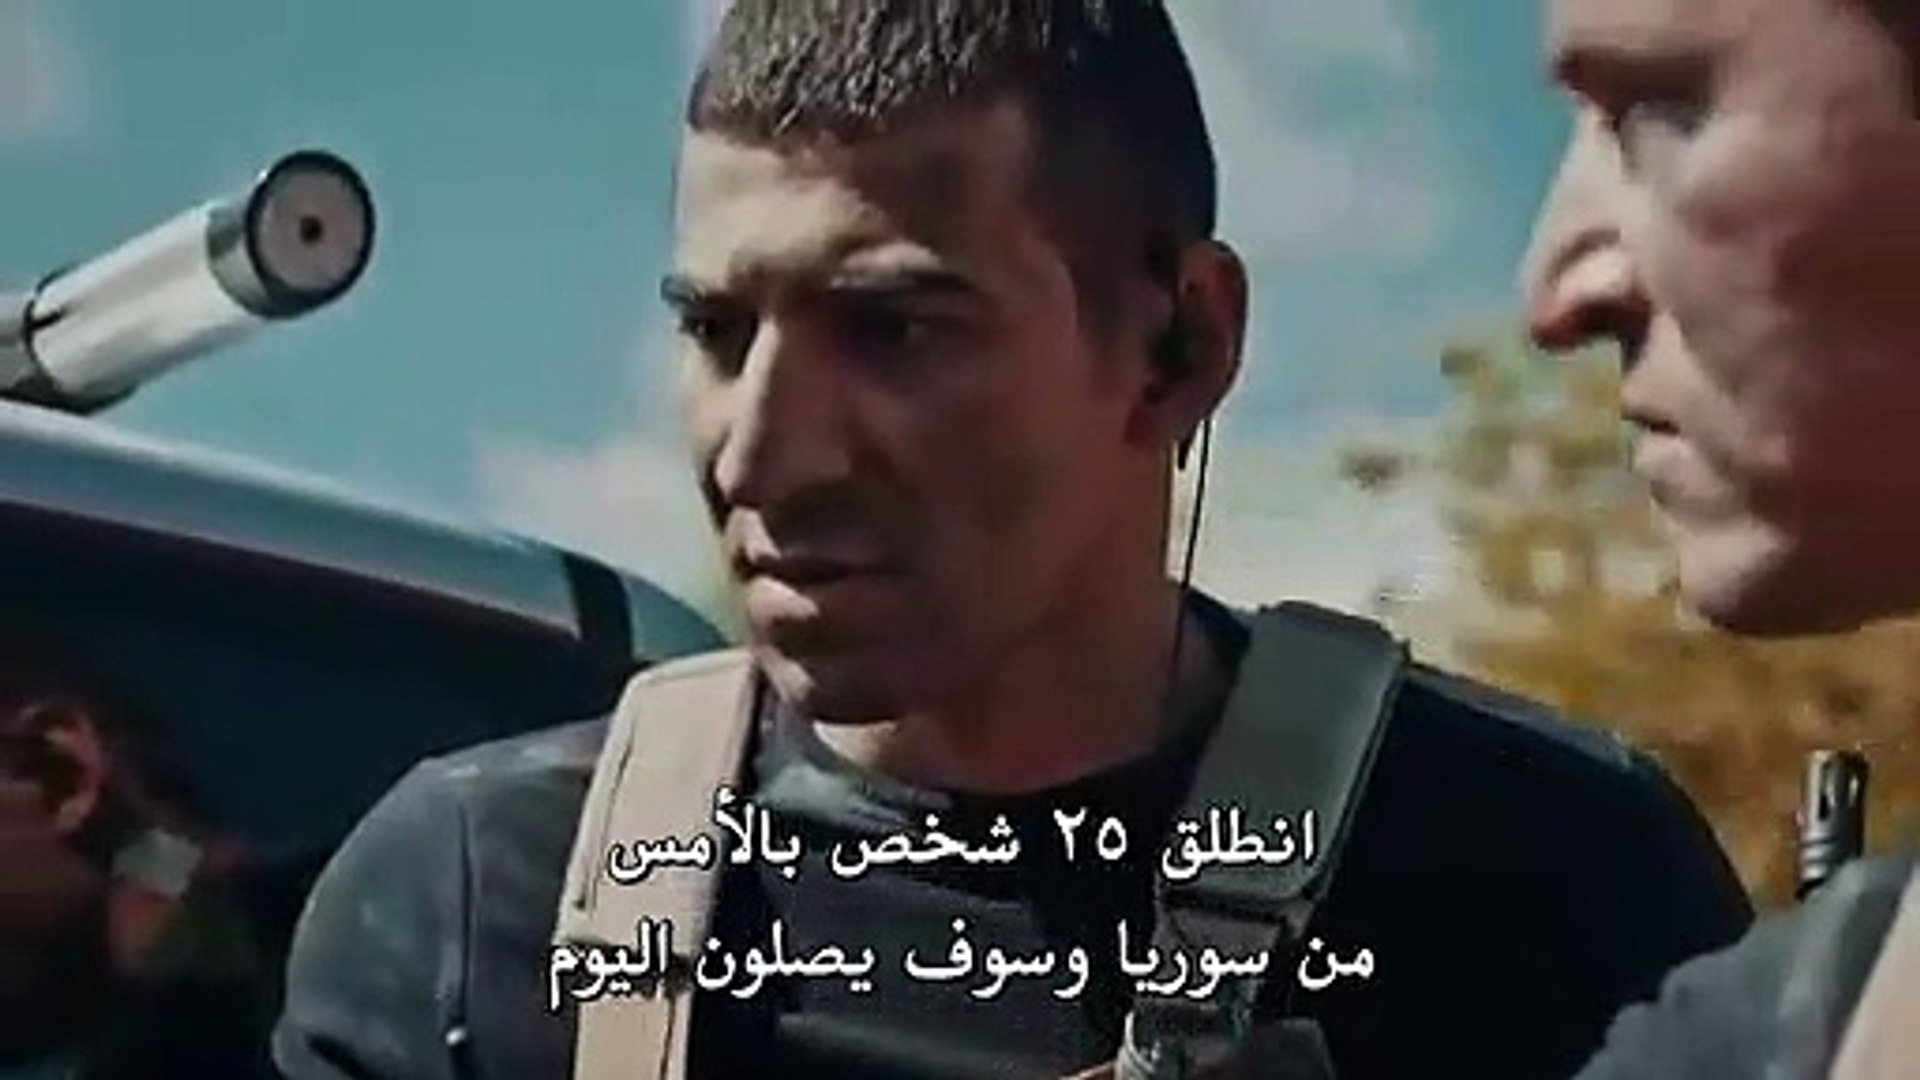 مسلسل العهد الحلقة 7 القسم 1 مترجم للعربية - video Dailymotion